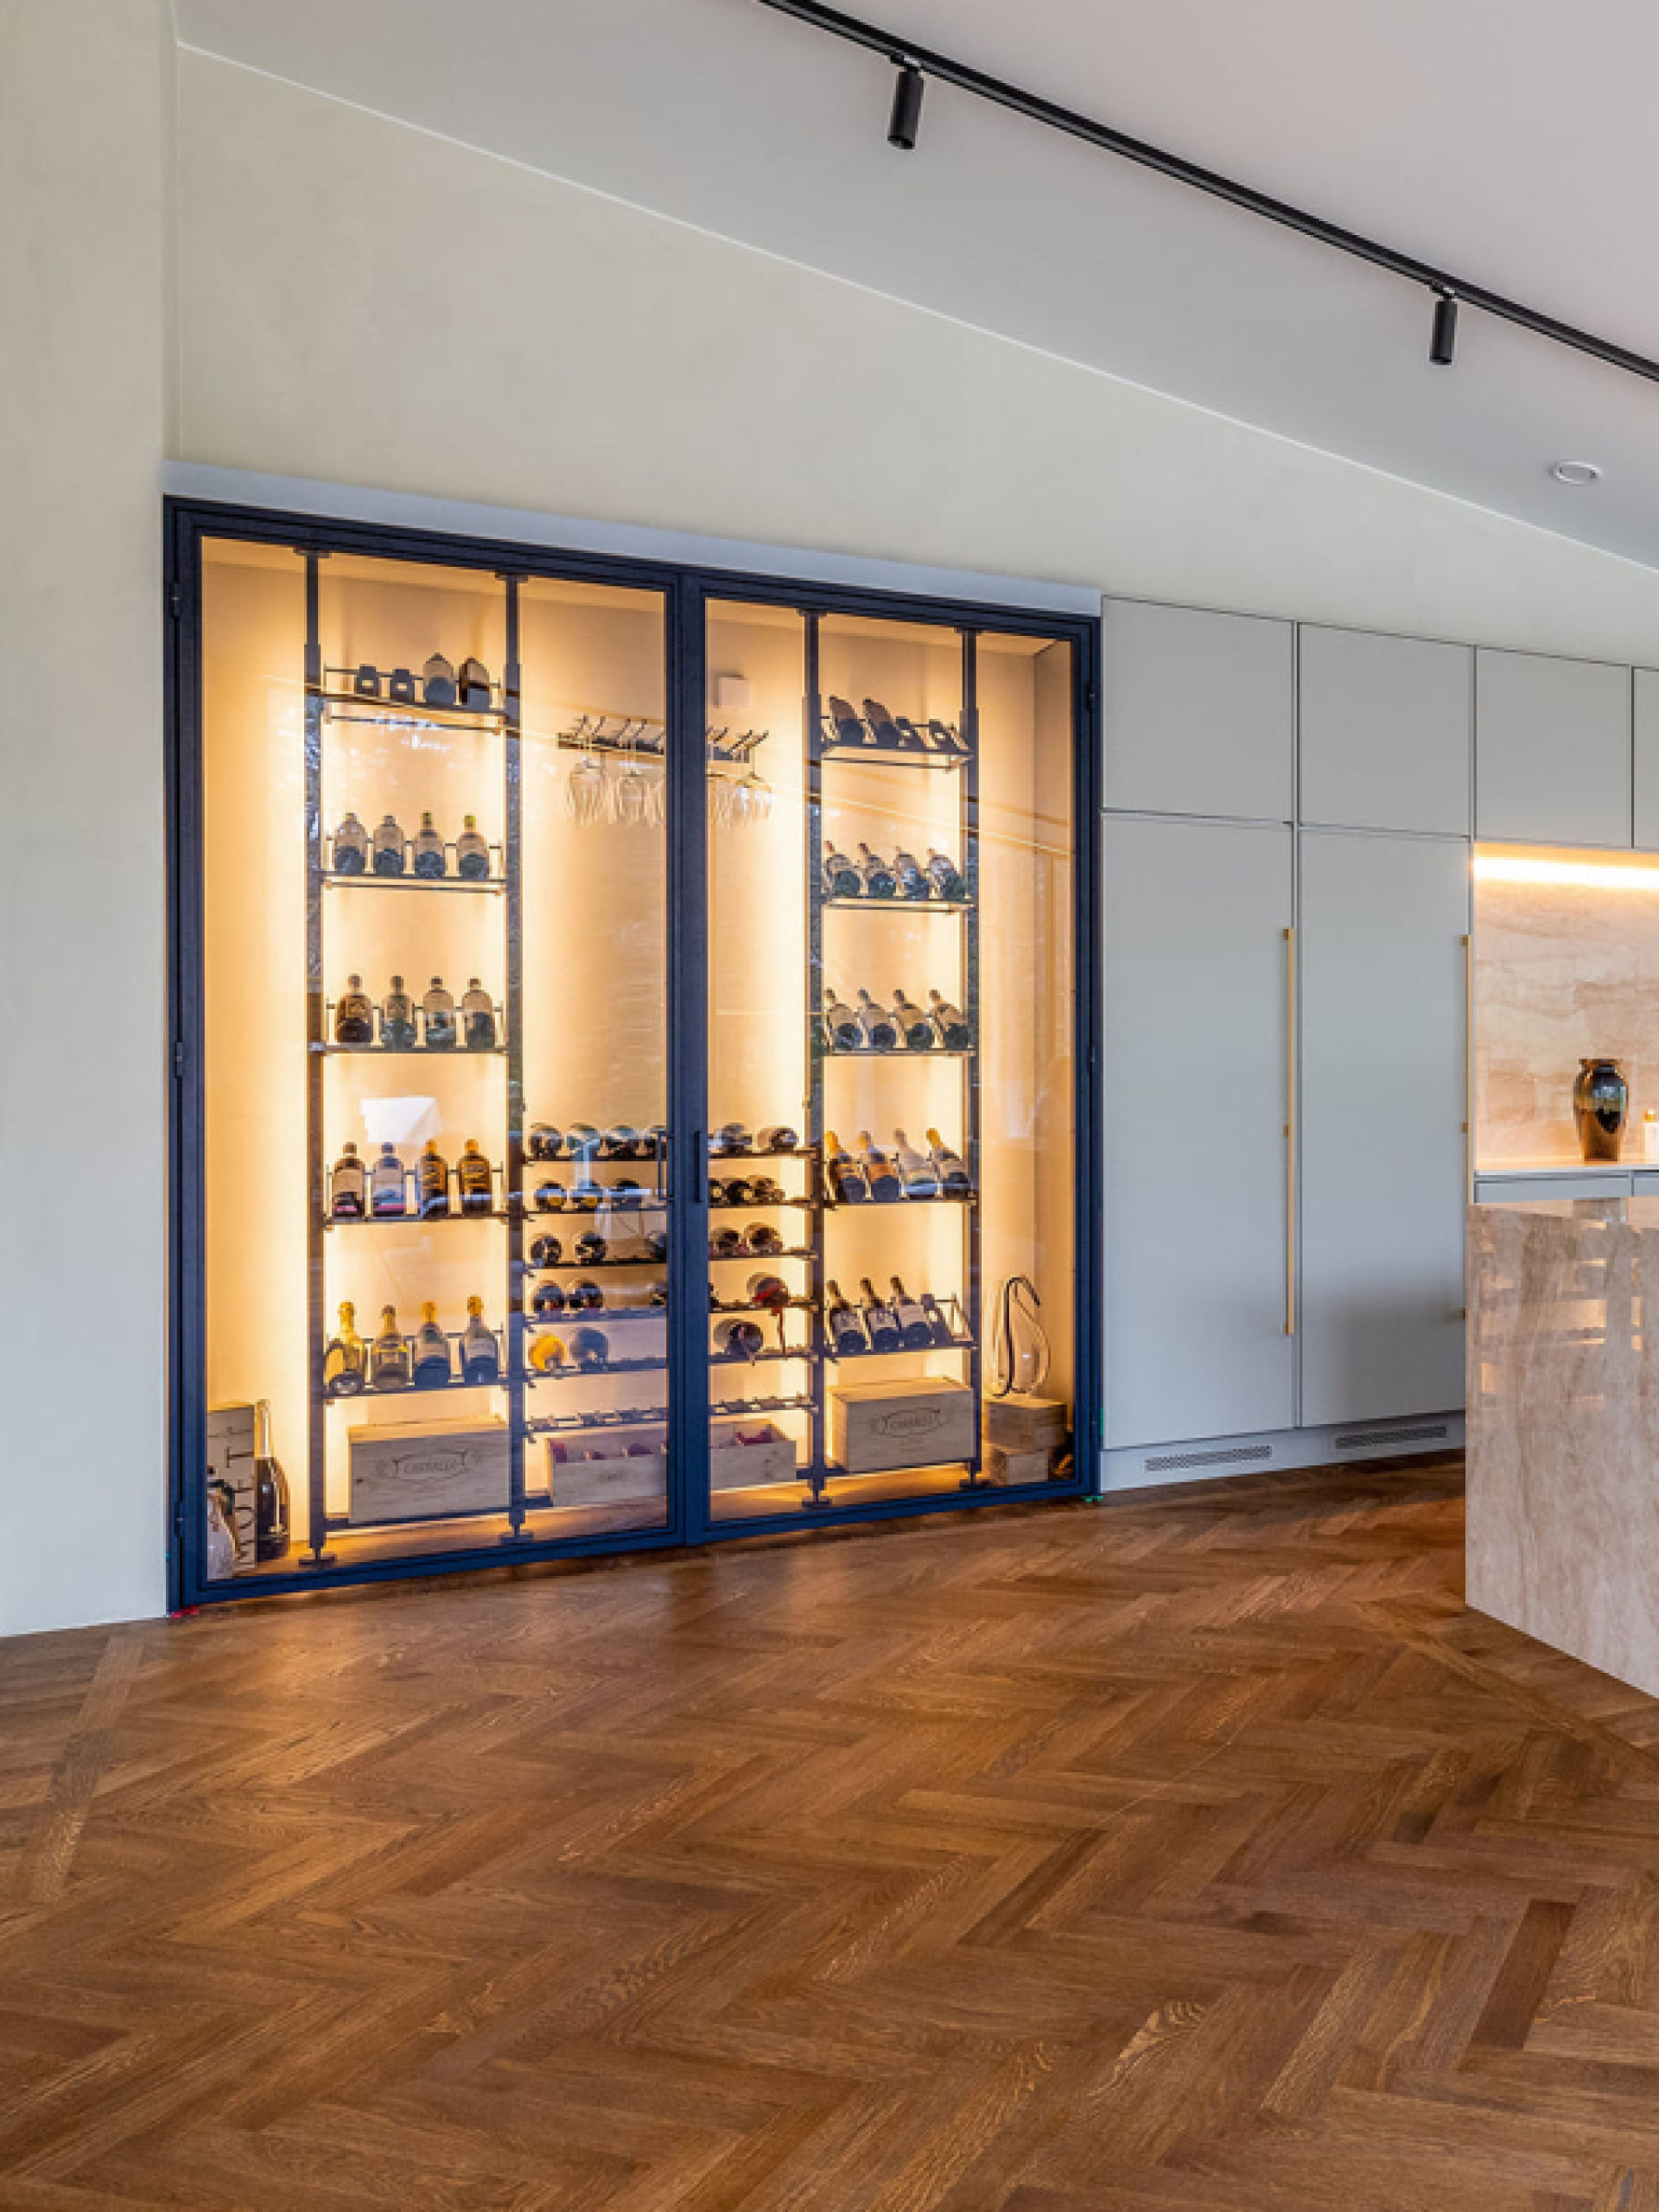 Exemple d'un espace rangement vin en métal dans un intérieur luxe au Danemark